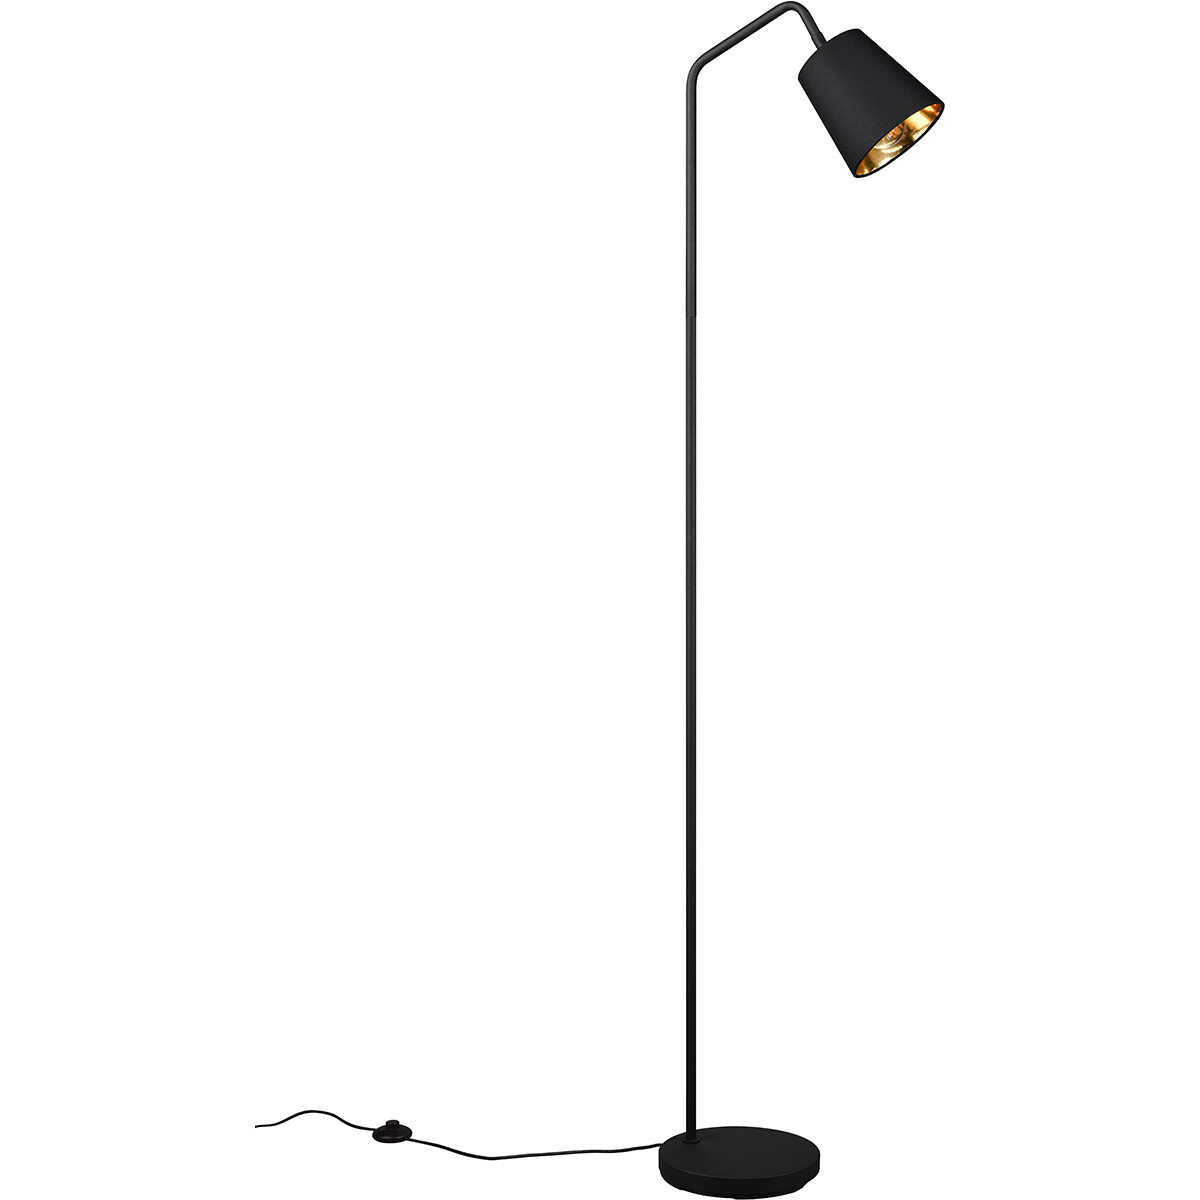 BES LED LED Vloerlamp - Trion Kido - E27 Fitting - Verstelbaar - Rond - Mat Zwart - Metaal